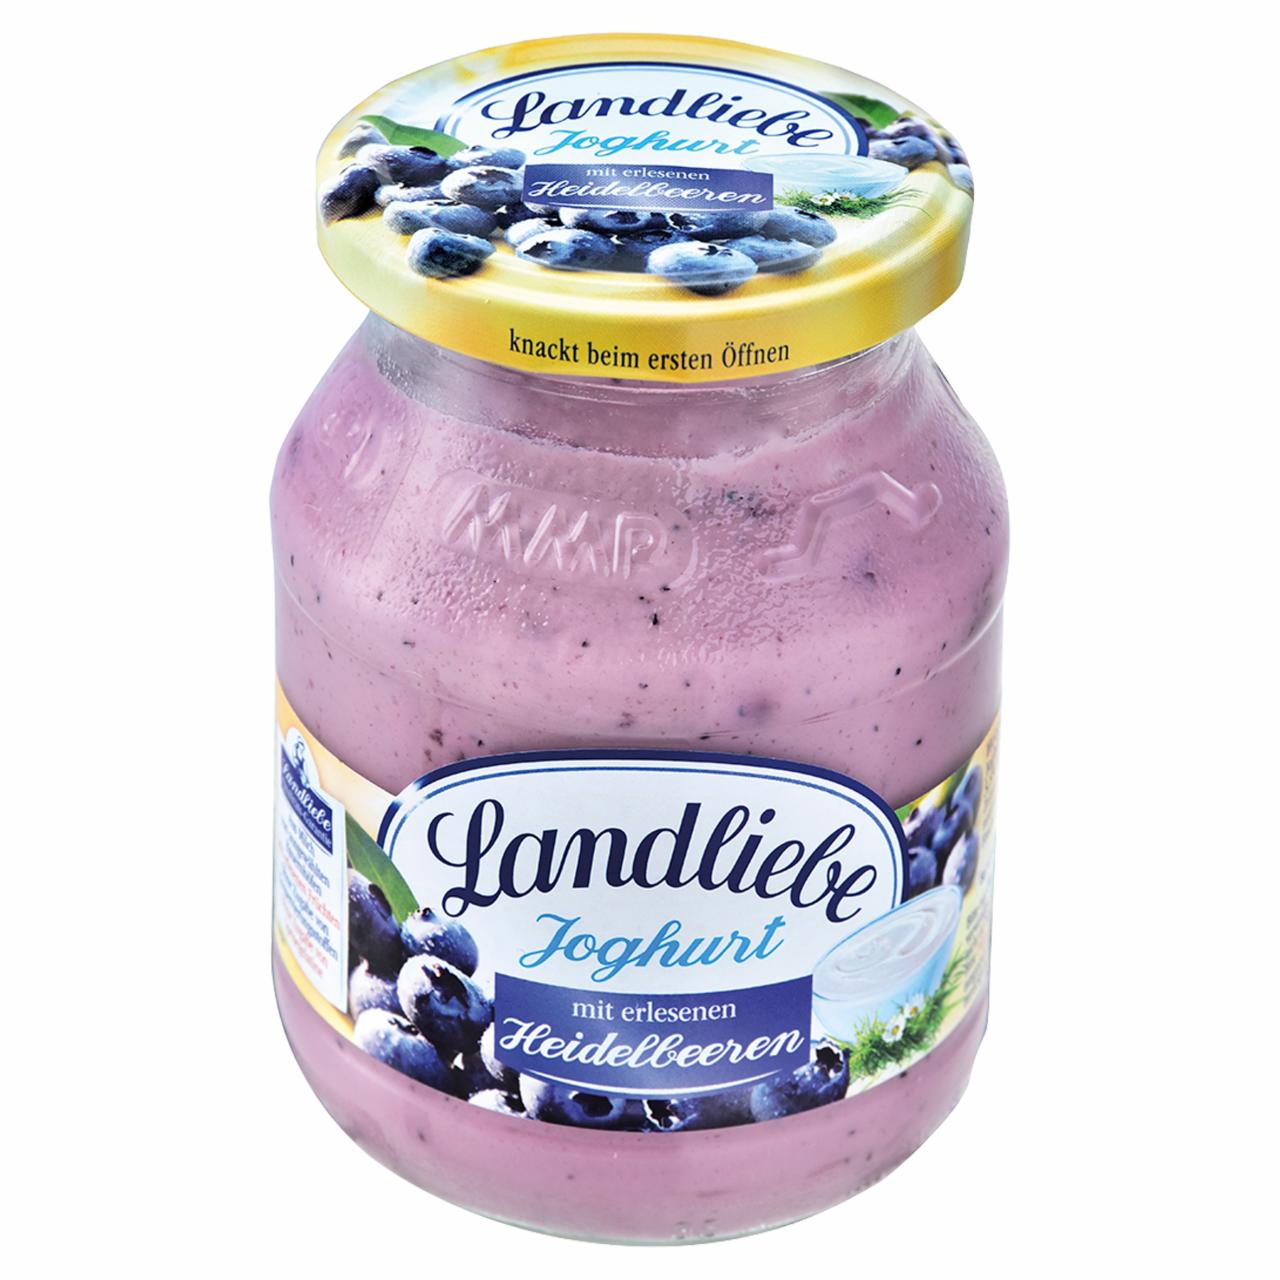 Képek - Landliebe joghurt zamatos áfonyával 500 g